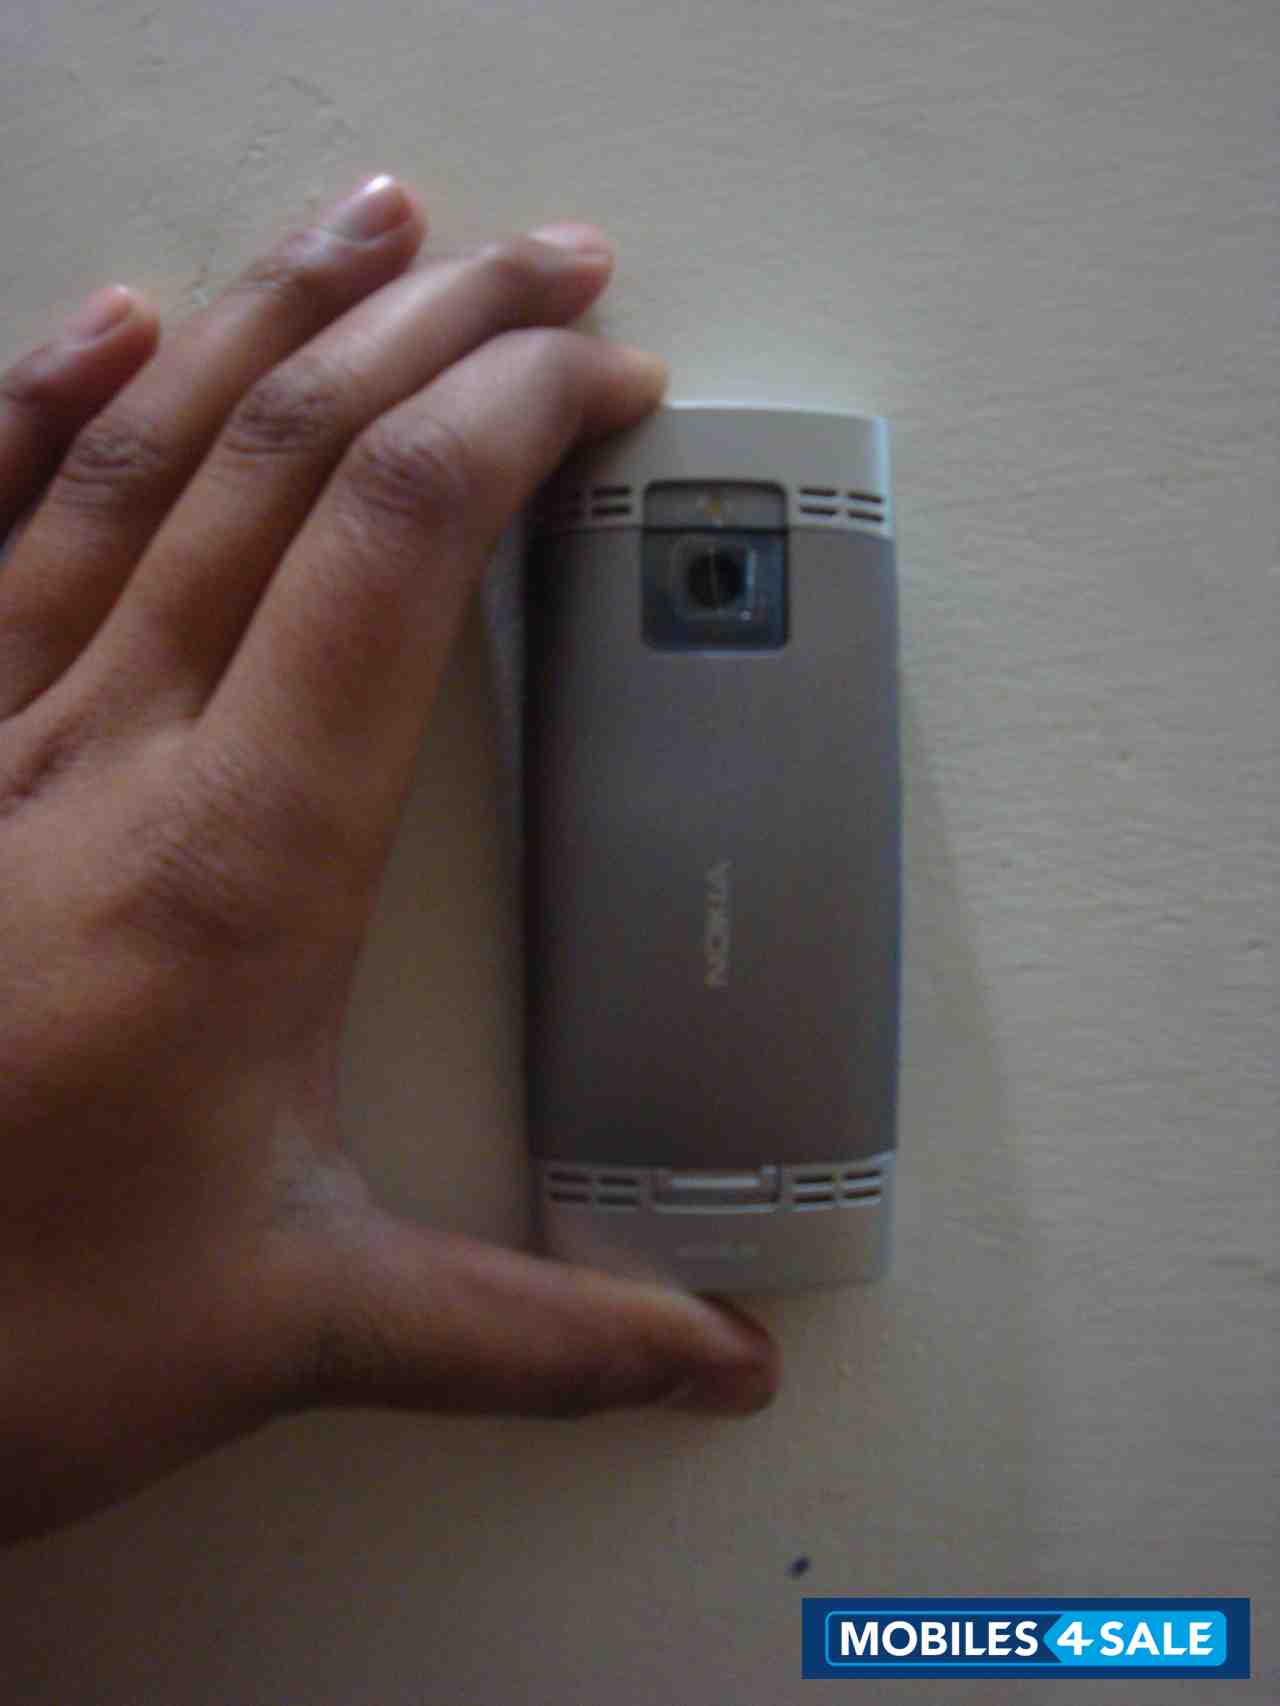 White-silver Nokia X2